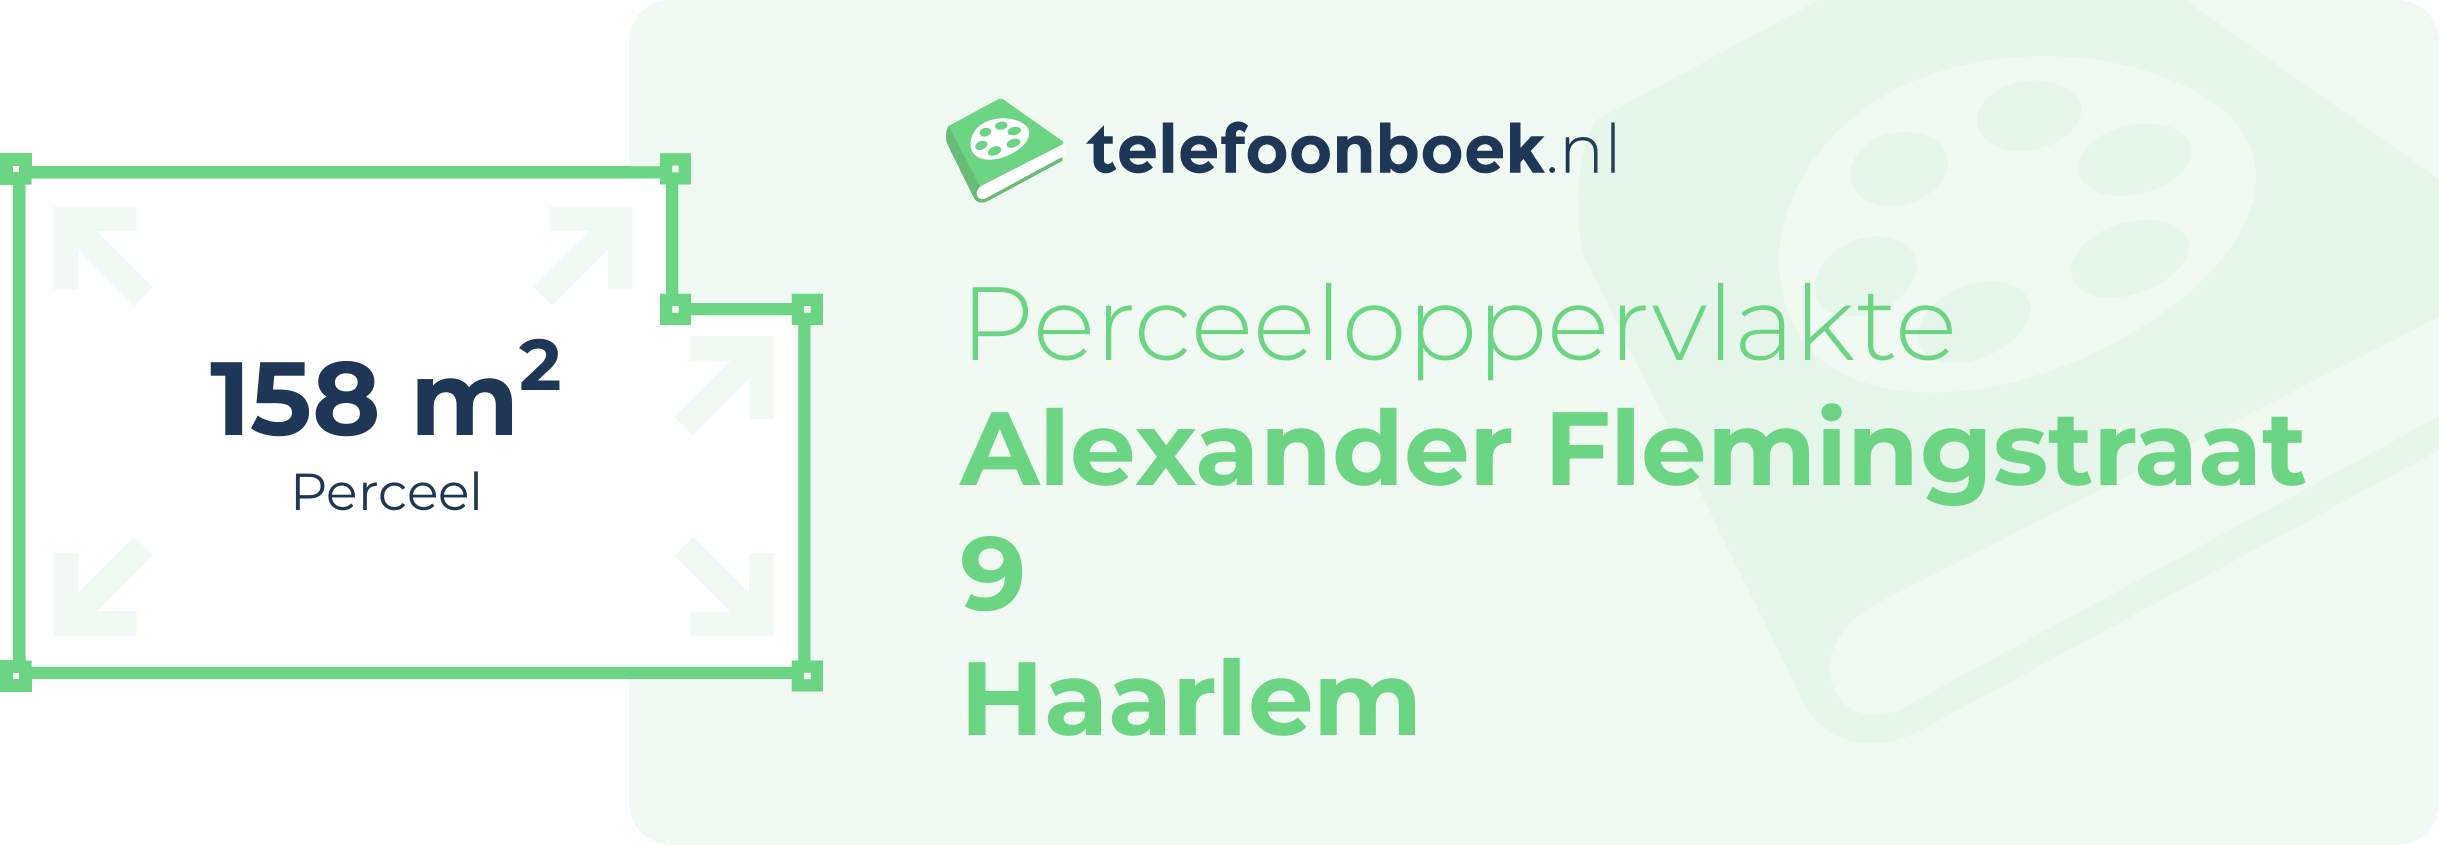 Perceeloppervlakte Alexander Flemingstraat 9 Haarlem